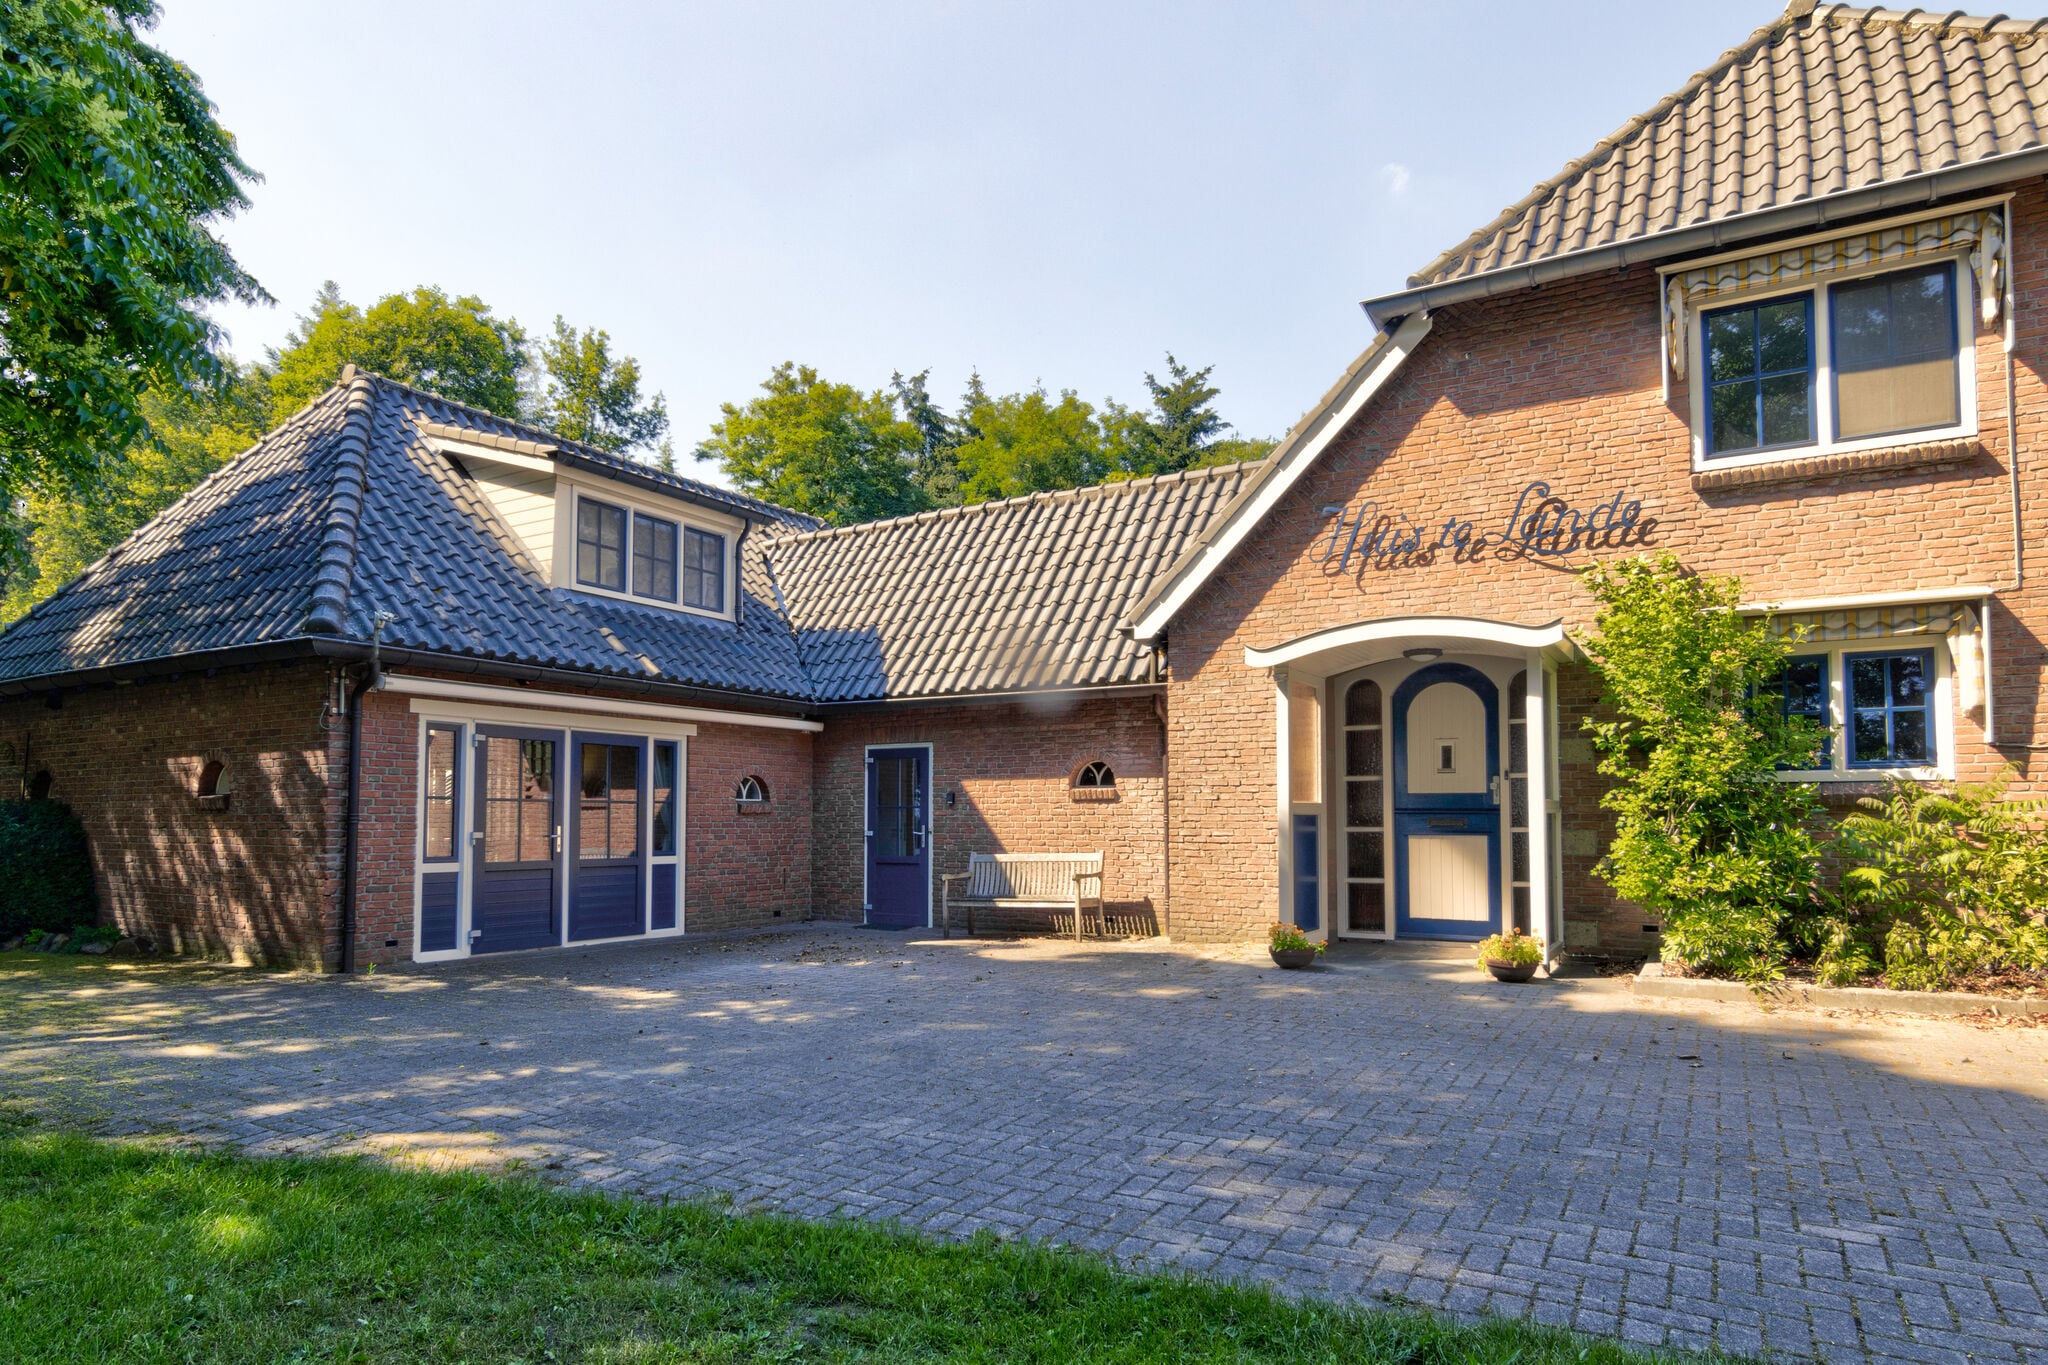 Landelijk vakantiehuis in Overijssel met een ruime tuin